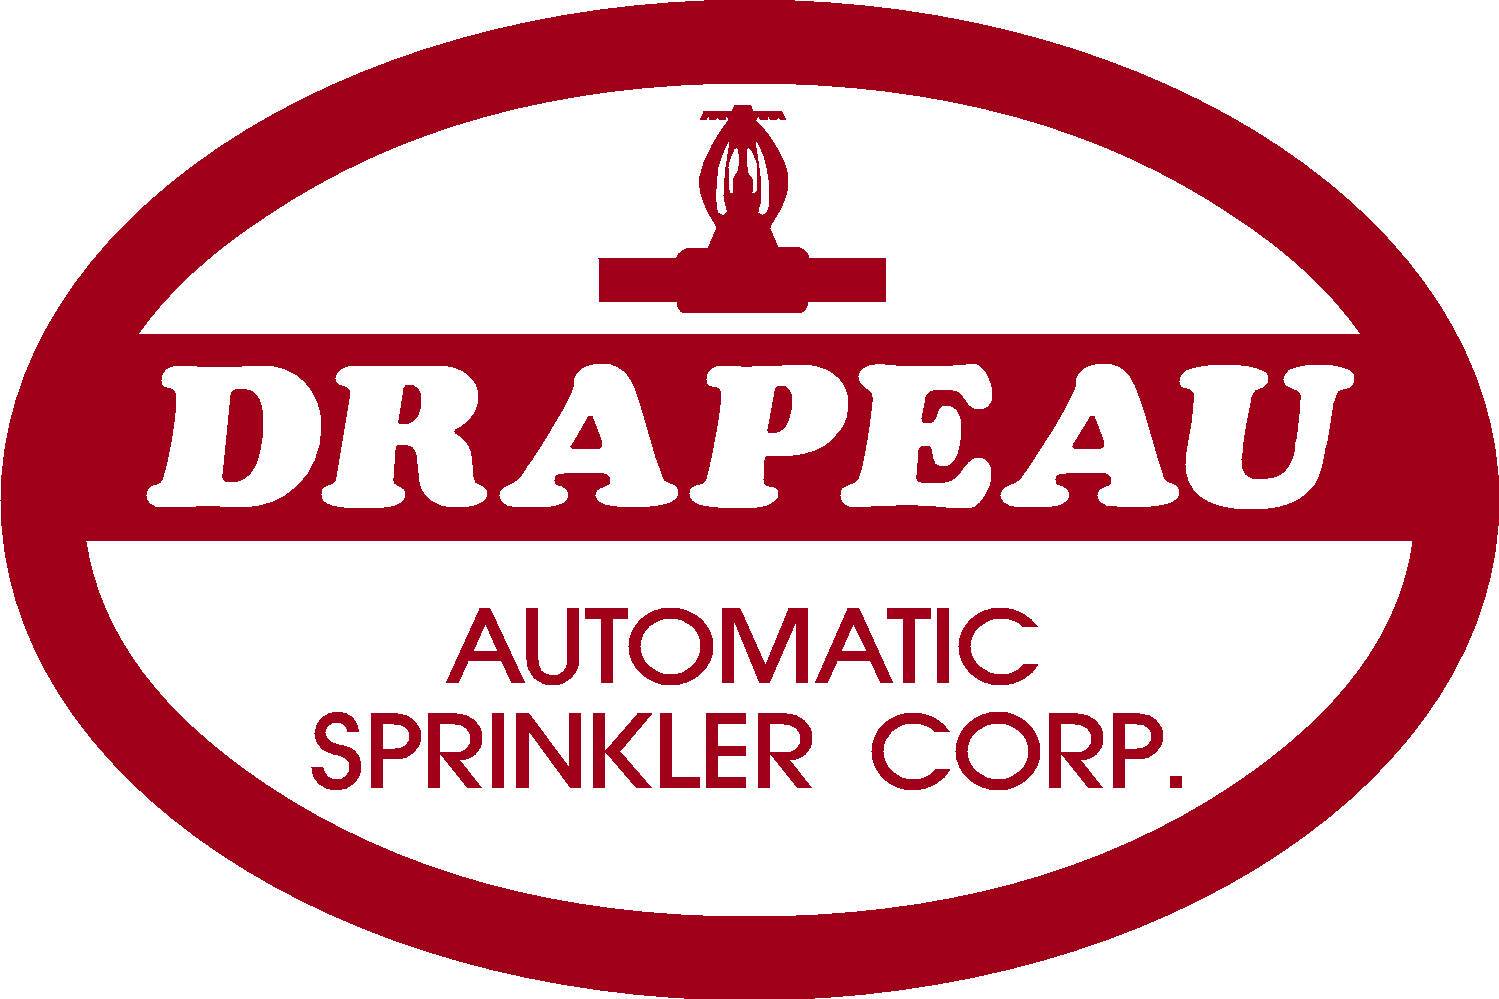 Drapeau Automatic Sprinkler Corp.